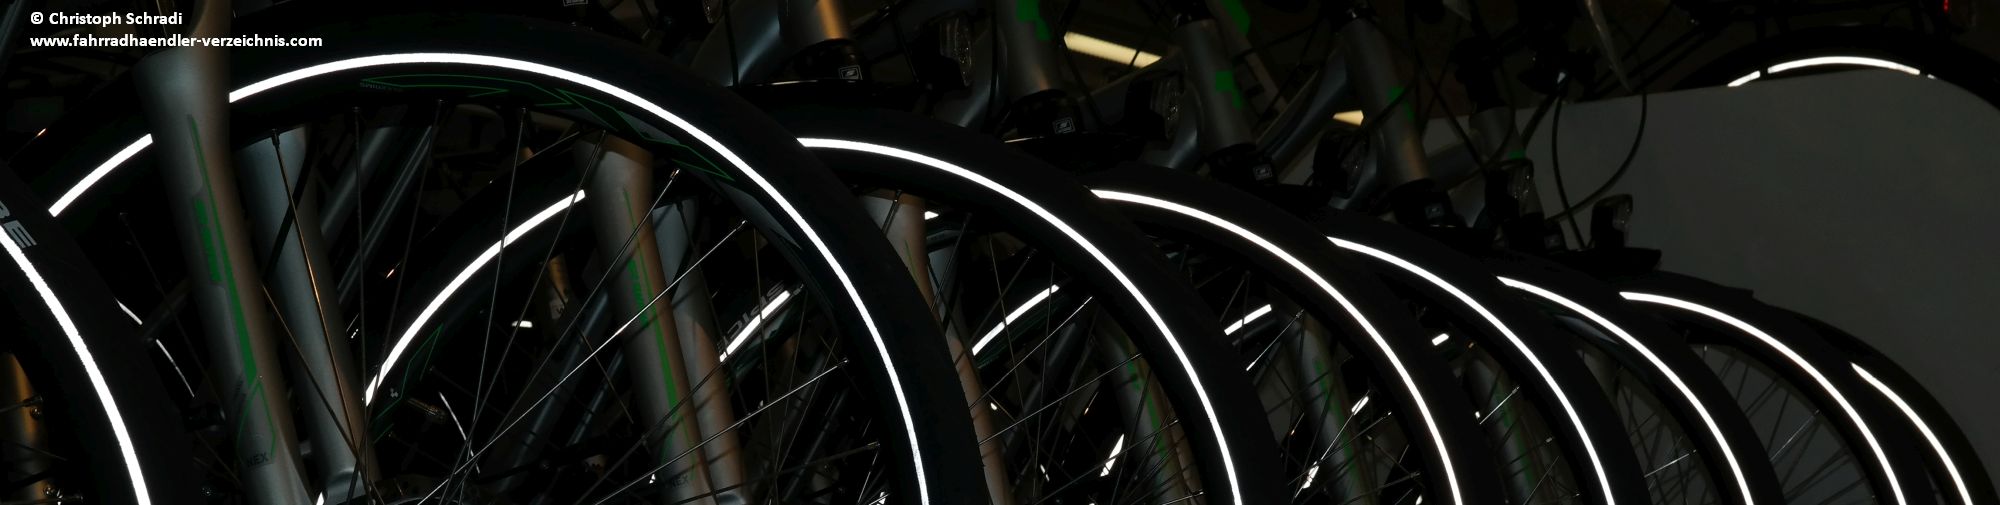 Mithilfe eines Leuchtstreifens auf dem Reifen des Fahrrads oder E-Bikes ist man auch in der Dunkelheit passiv gut sichtbar - das Licht wird seitlich großflächig reflektiert